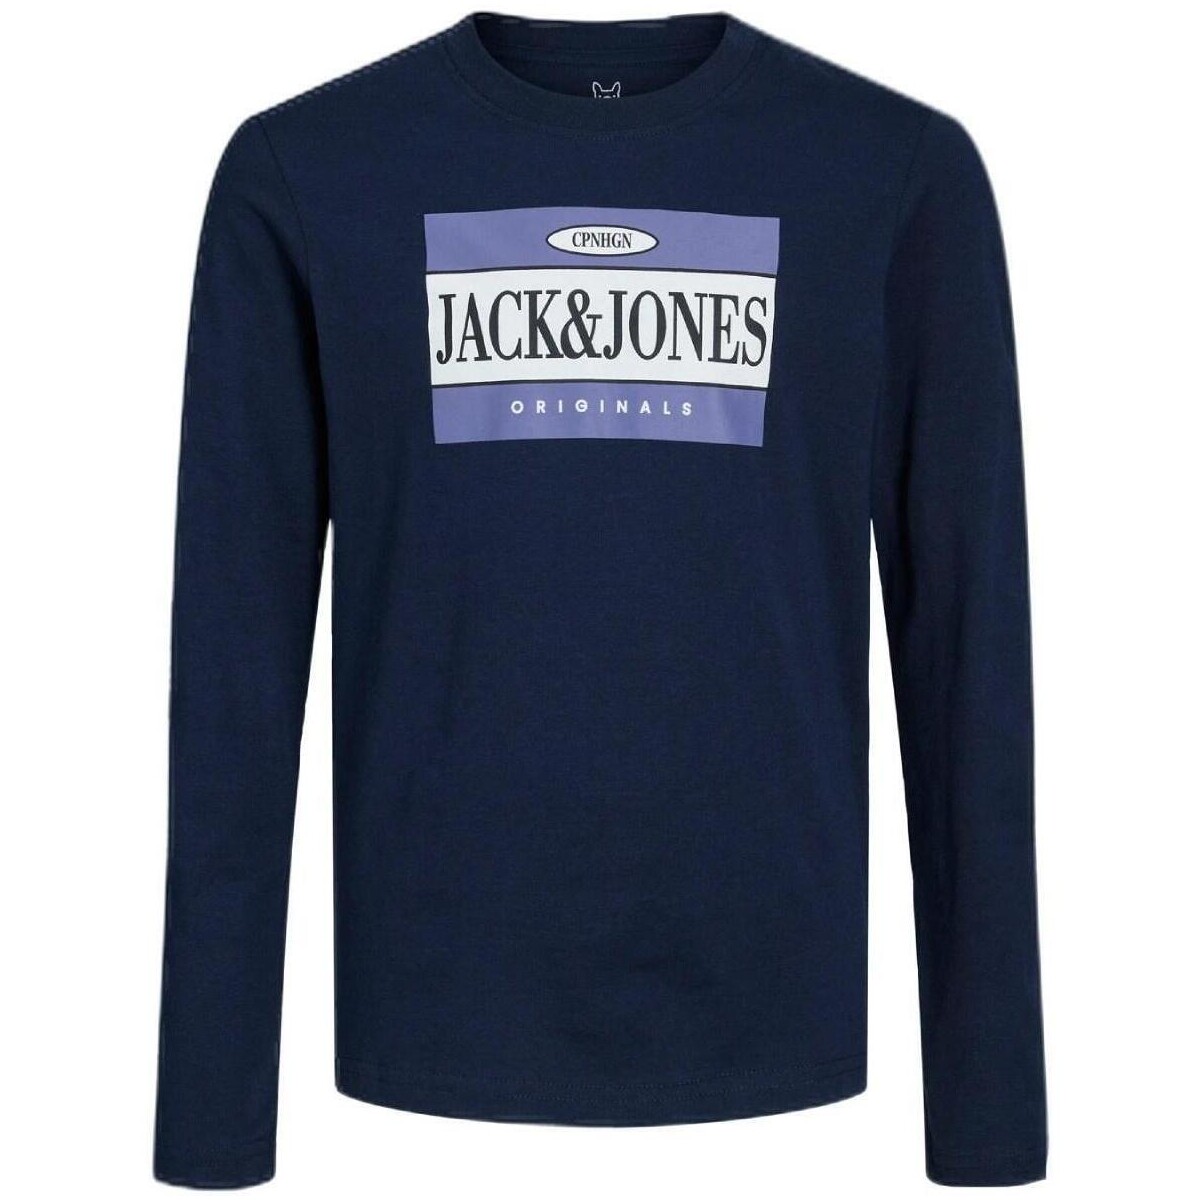 vaatteet Pojat Lyhythihainen t-paita Jack & Jones  Sininen